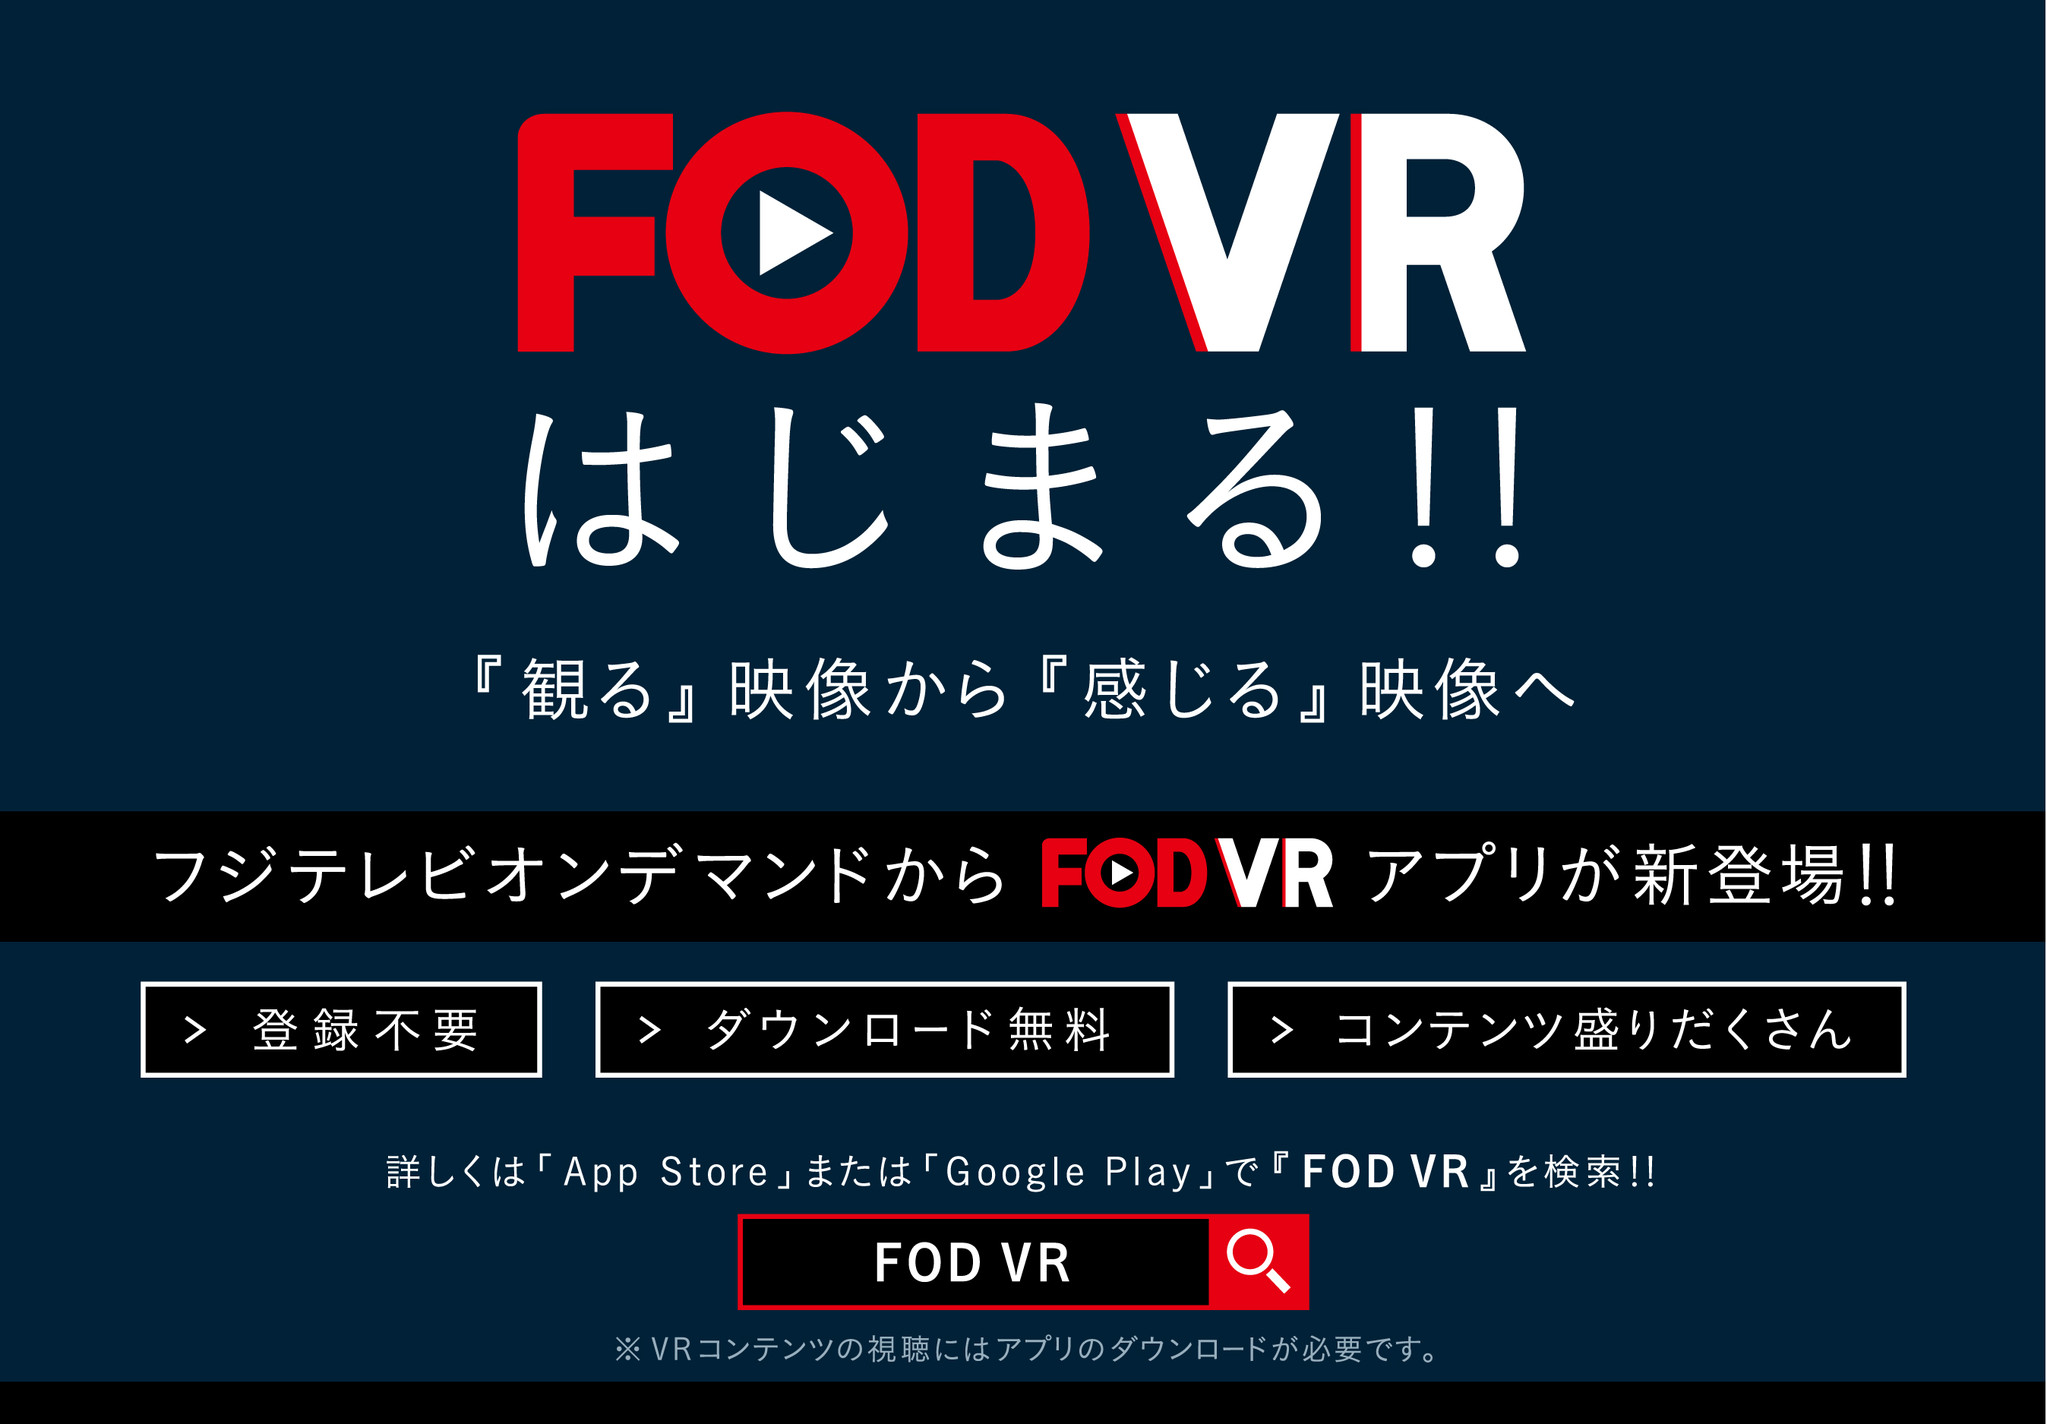 フジテレビオンデマンドvr視聴アプリ Fodvr に Vr Gateway の技術提供 ゲートウエイ株式会社のプレスリリース